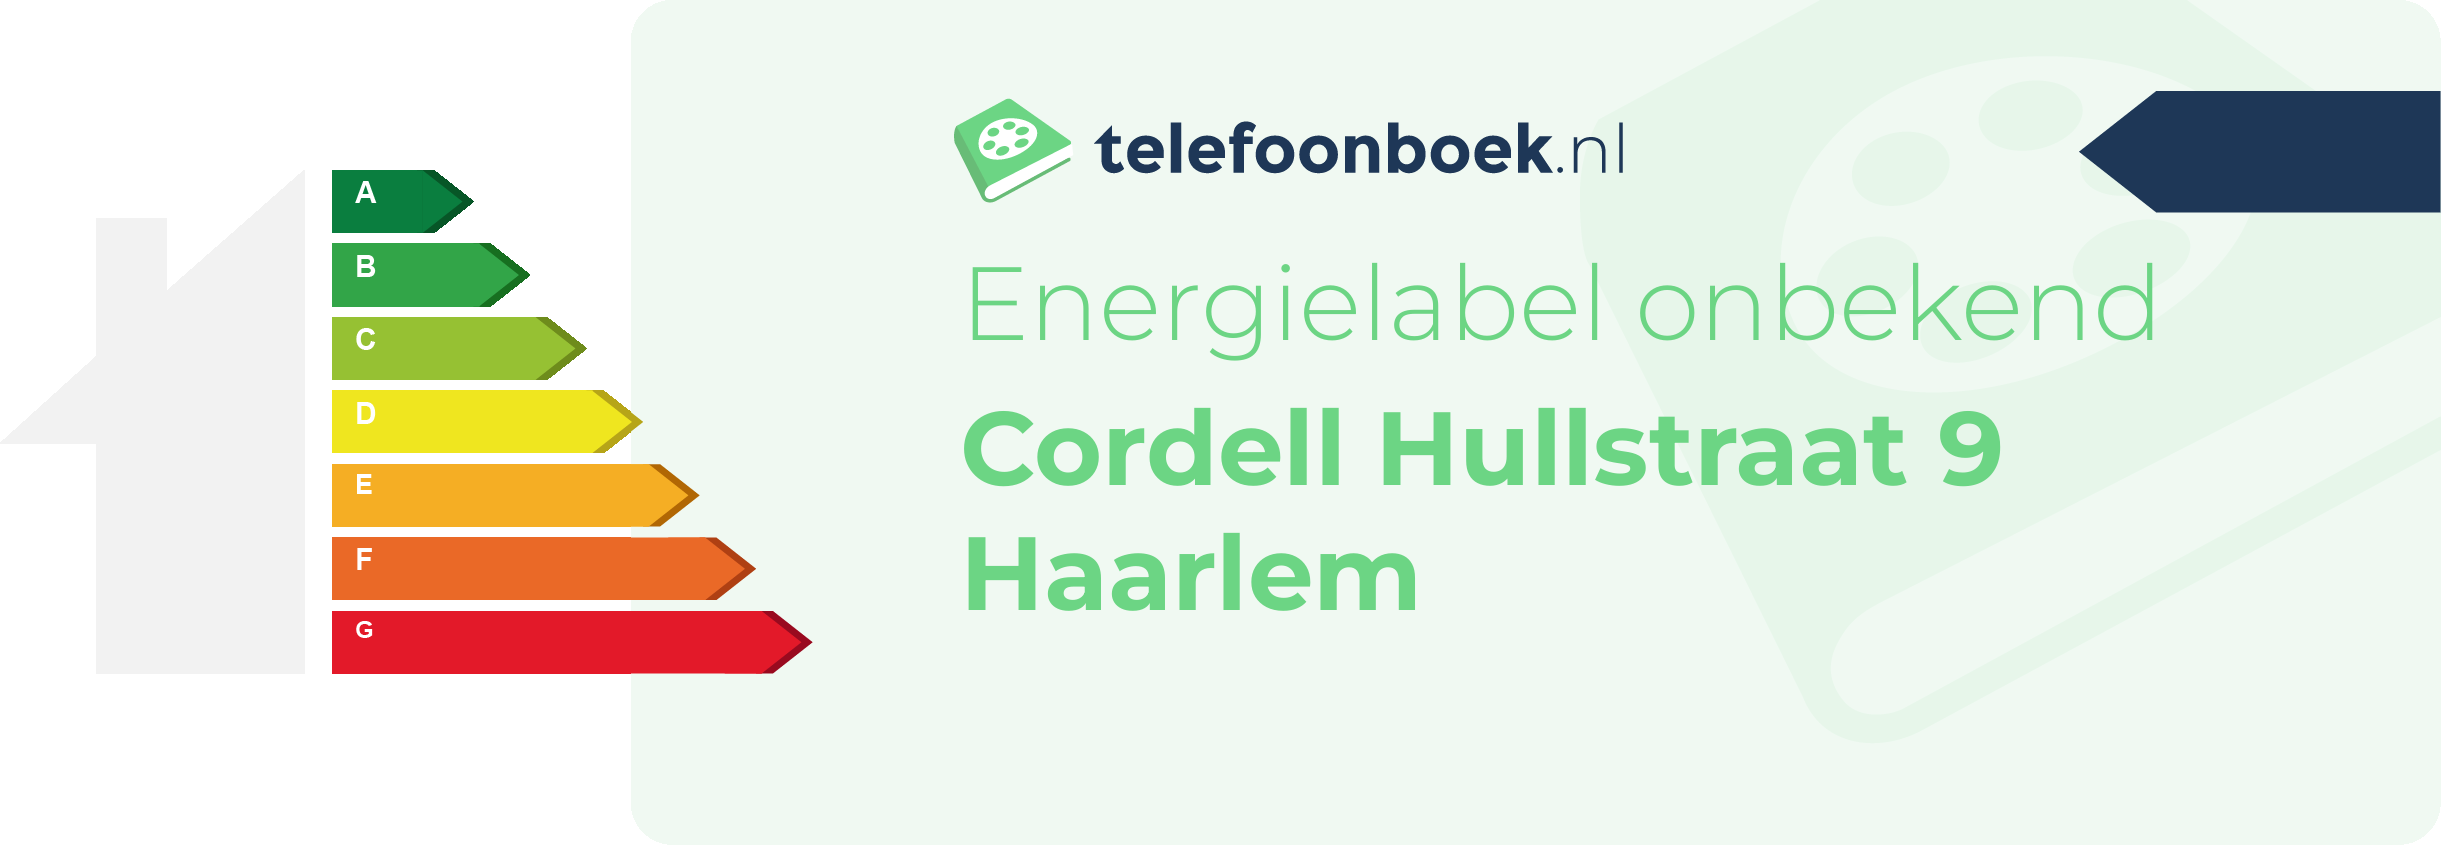 Energielabel Cordell Hullstraat 9 Haarlem